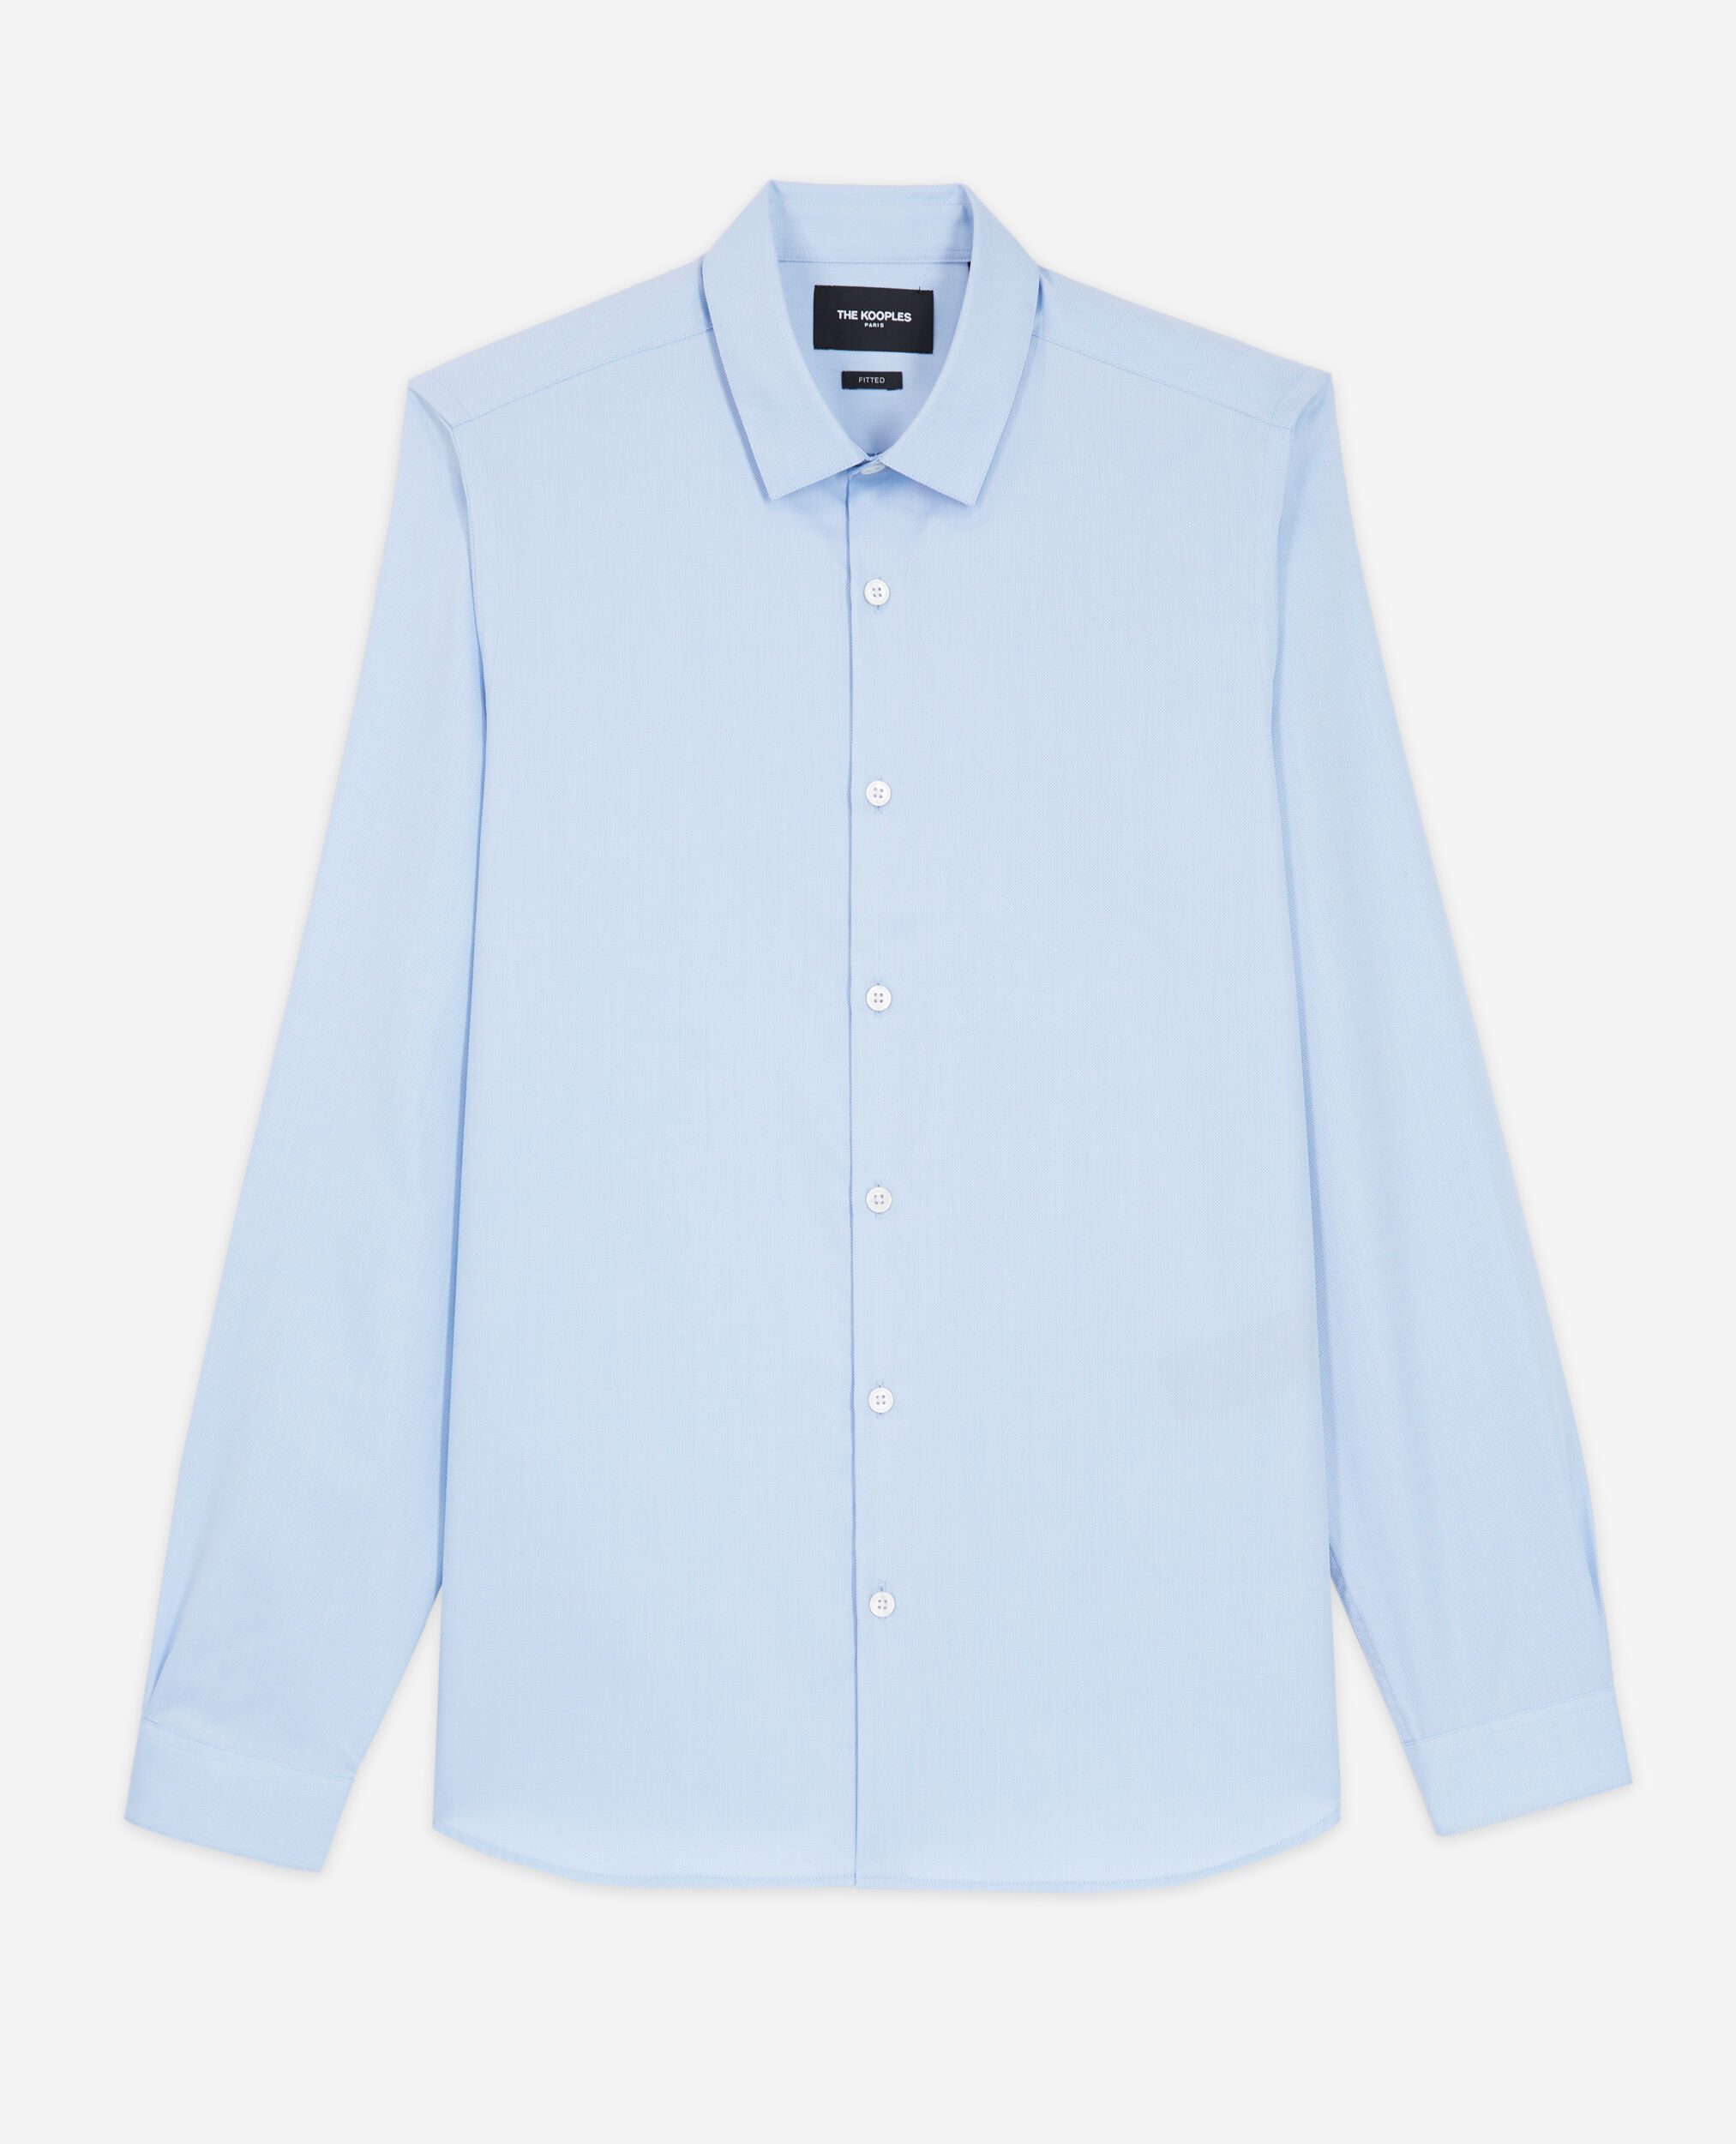 Camisa formal azul algodón, BLUE, hi-res image number null